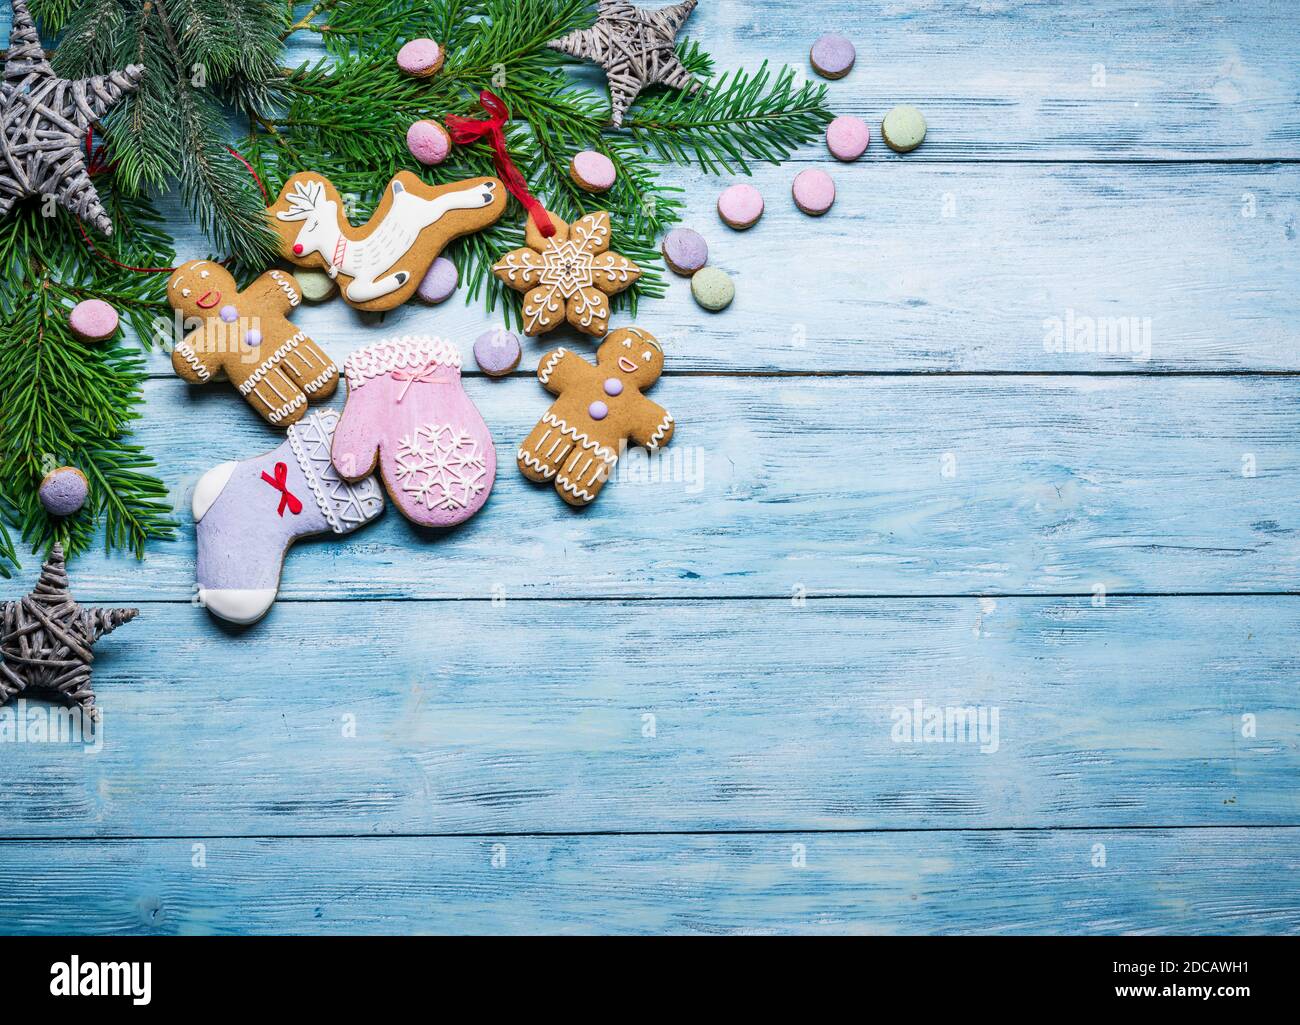 Fond en bois bleu avec décoration de noël et biscuits au gingembre. Arrière-plan des fêtes de Noël ou du nouvel an. Vue de dessus. Banque D'Images